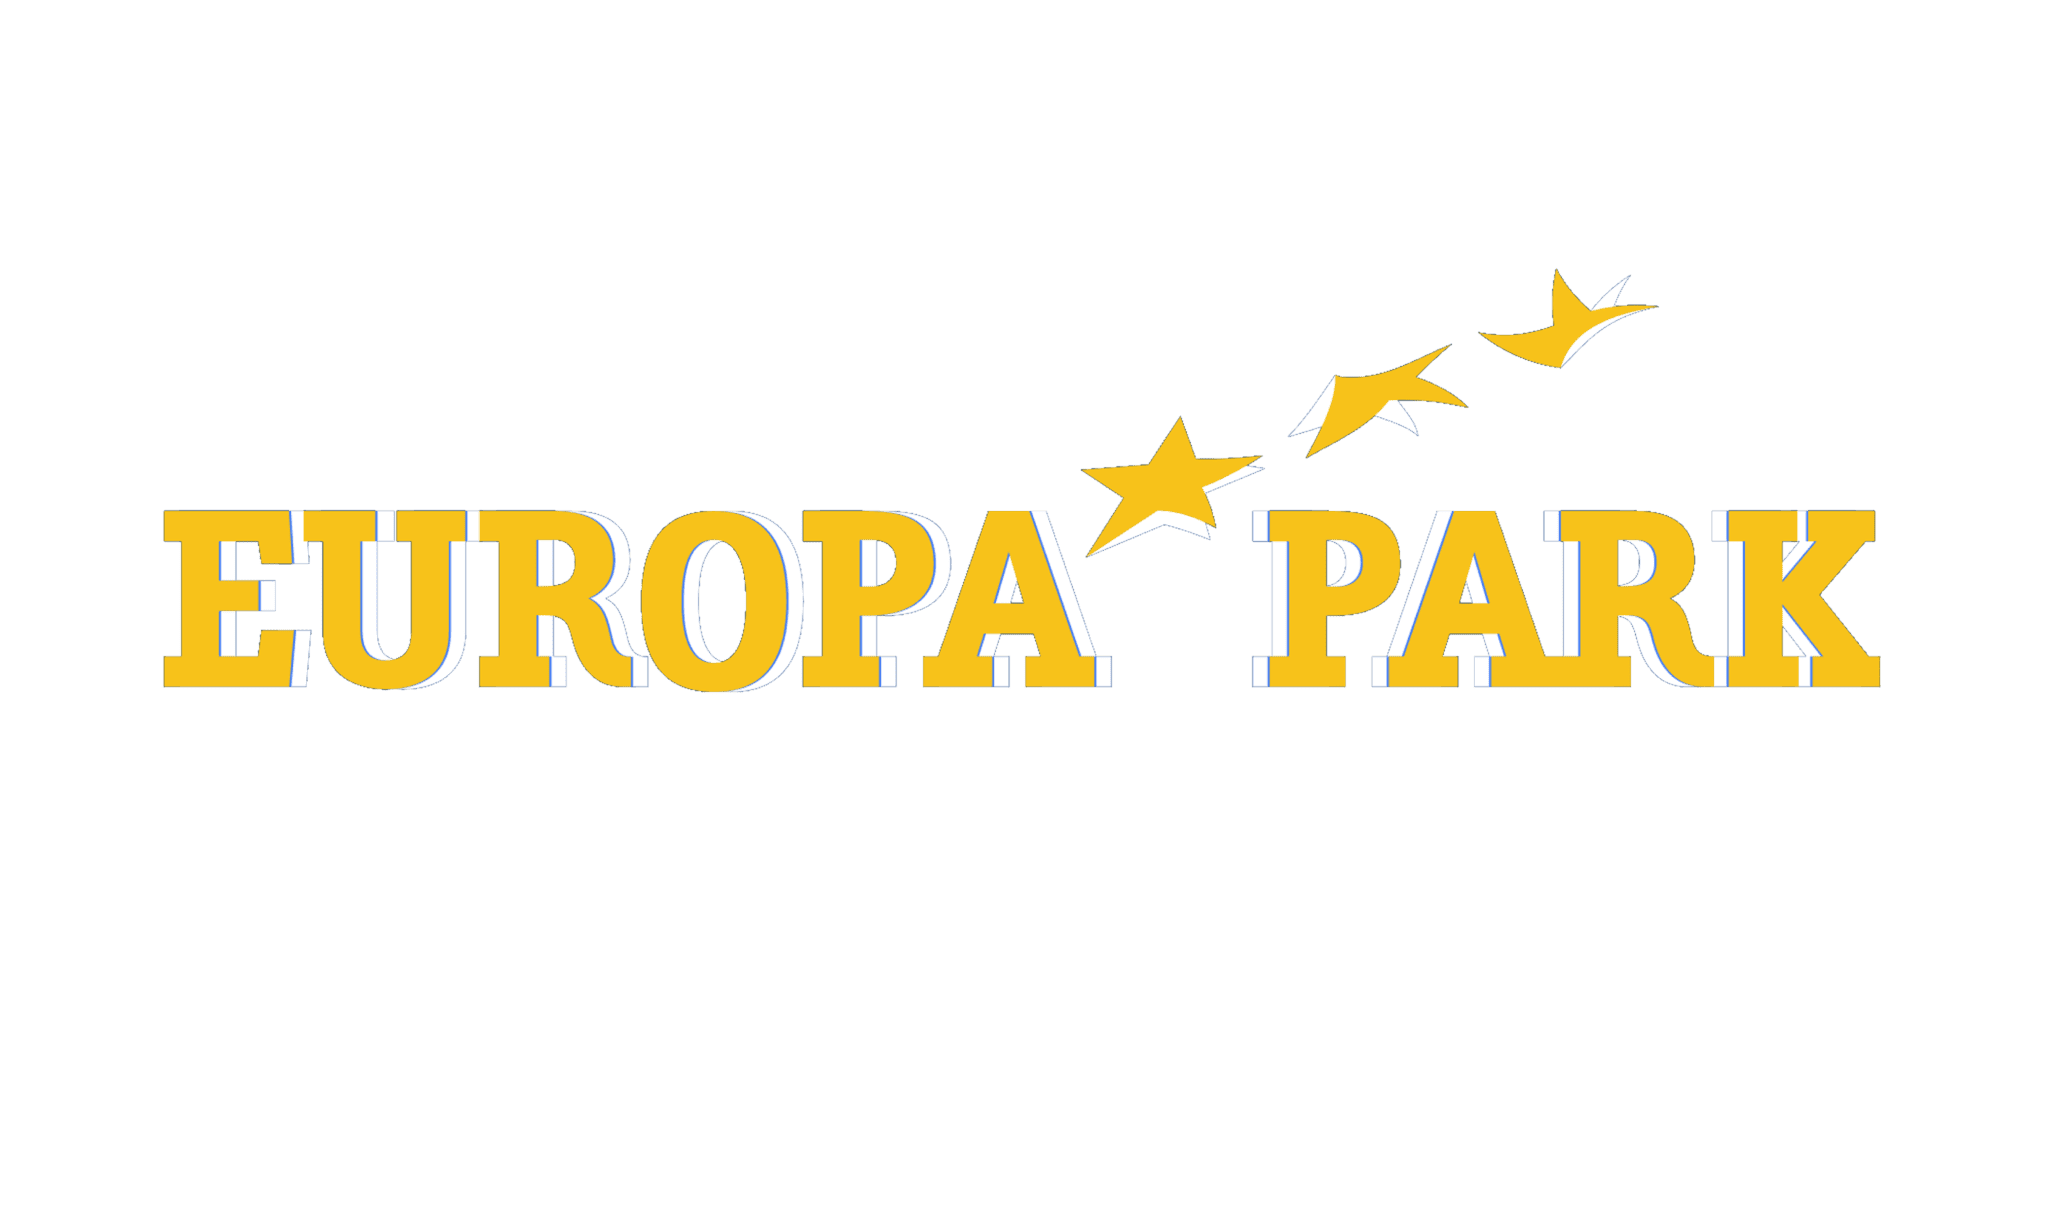 The Europa park logo